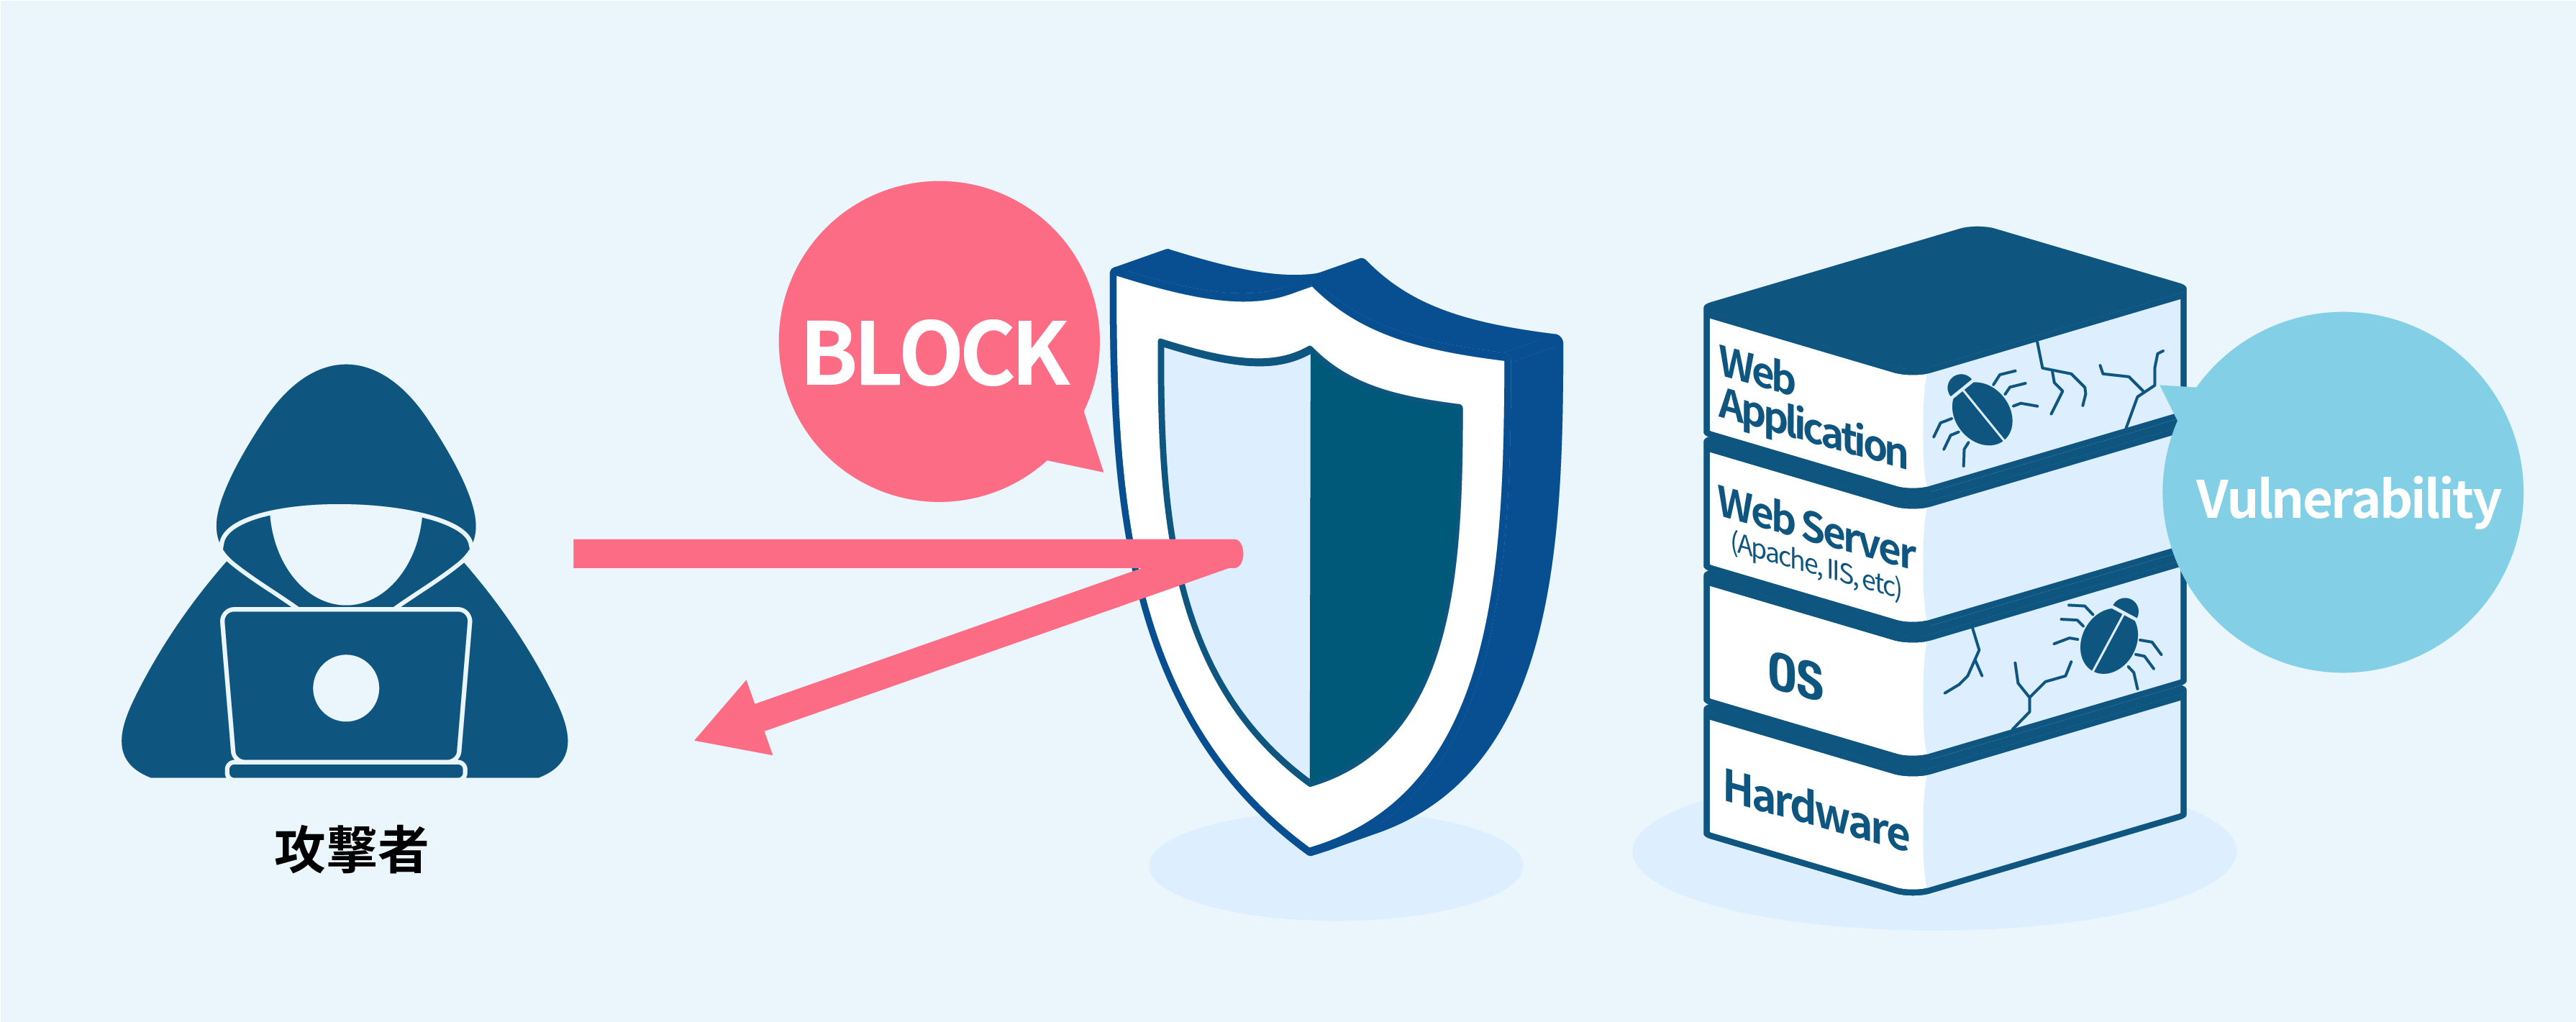 OSや業務システムに脆弱性があり修正をすぐに行うことが難しい場合、WAFがその脆弱性を使った不正通信を検知し、遮断するという形で攻撃を防げます。